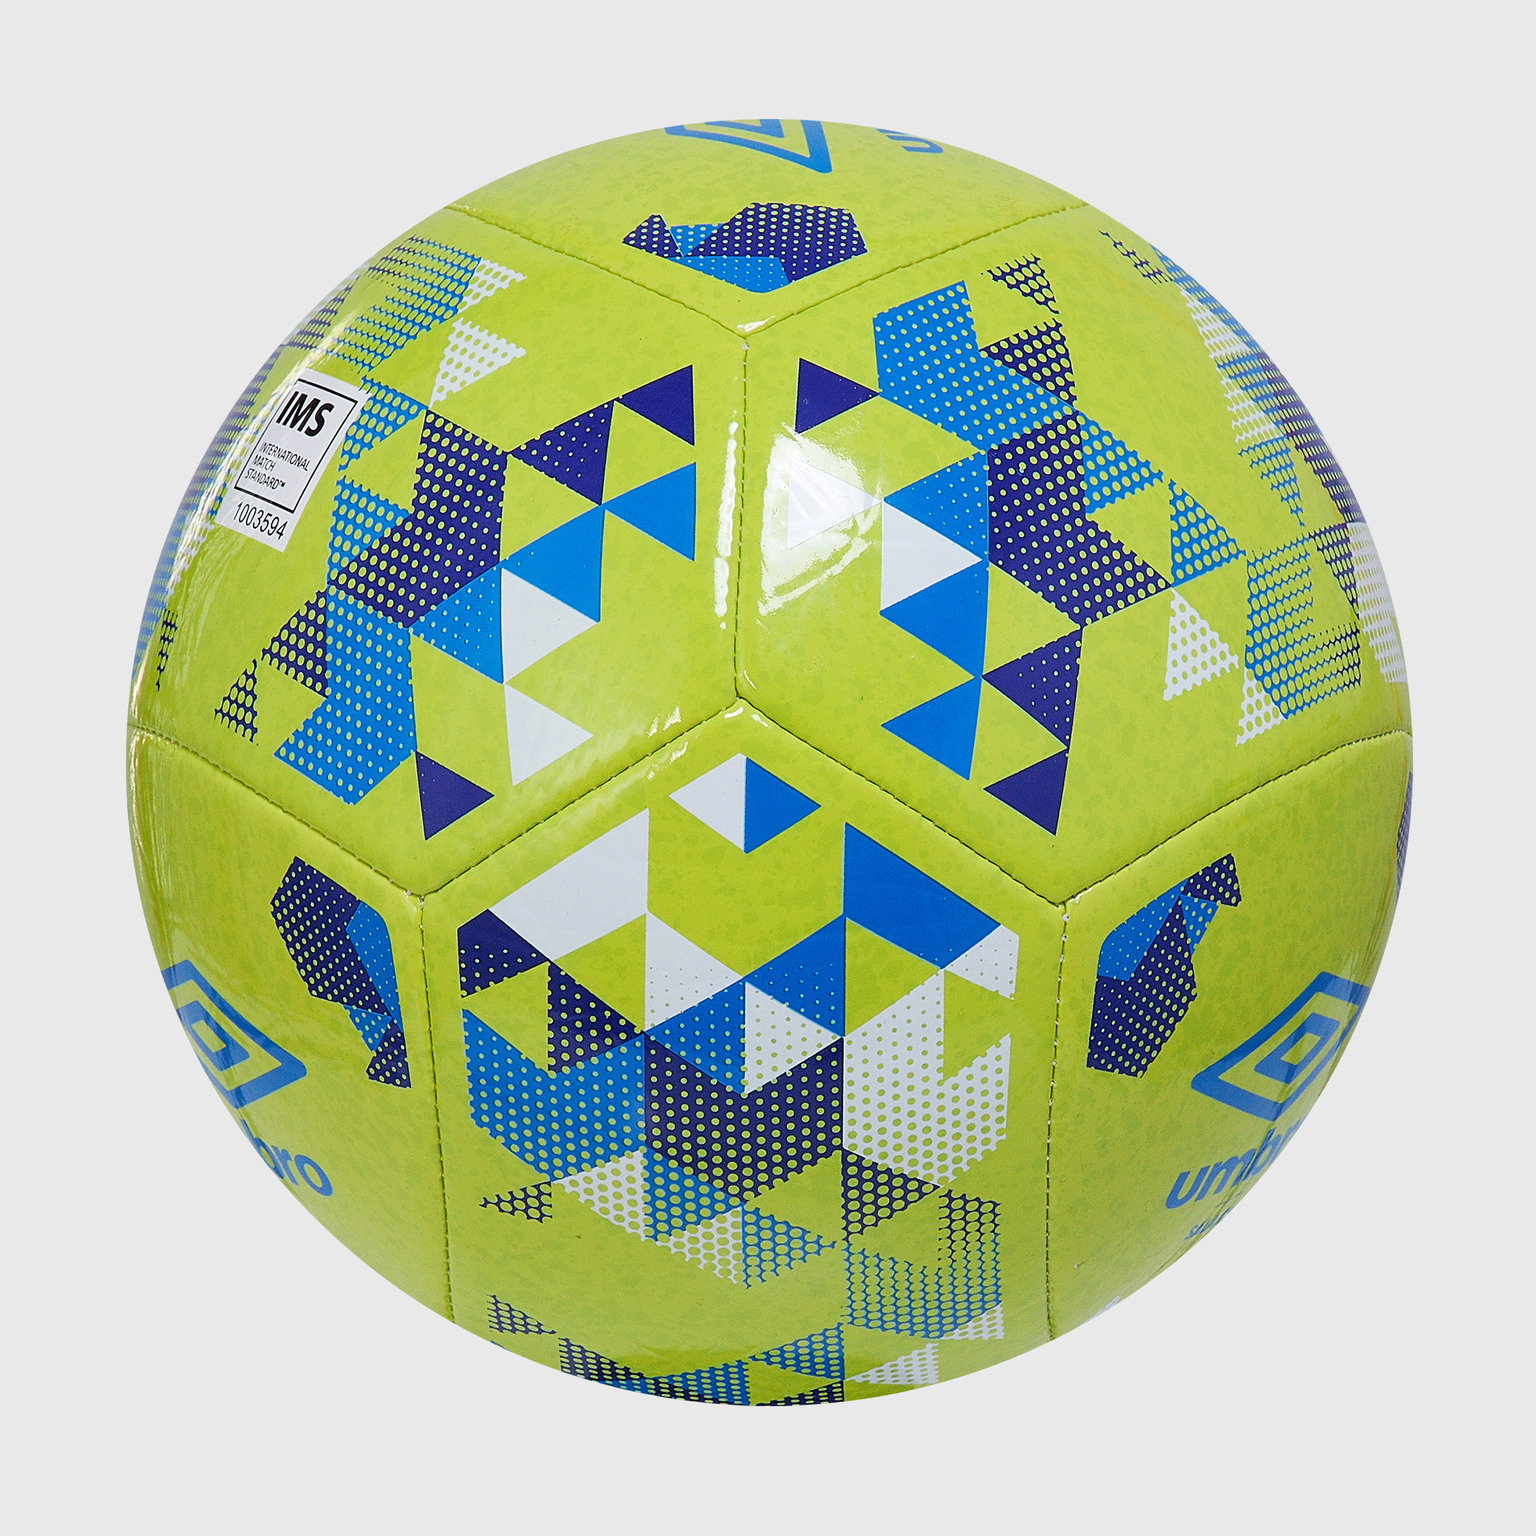 Футзальный мяч Umbro Sala Cup 21151U-KU3